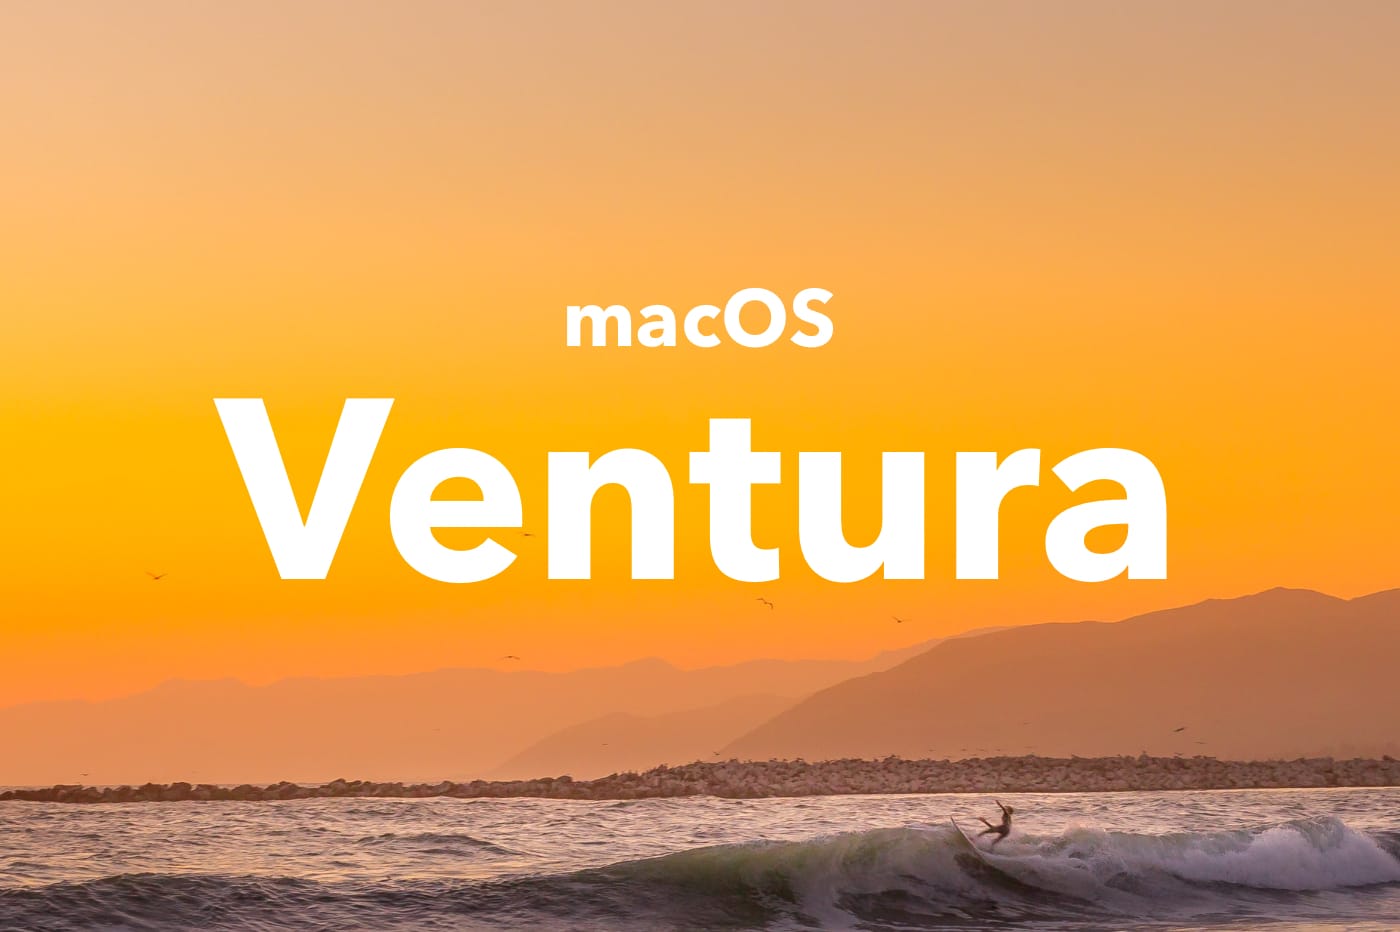 macOS Ventura plage